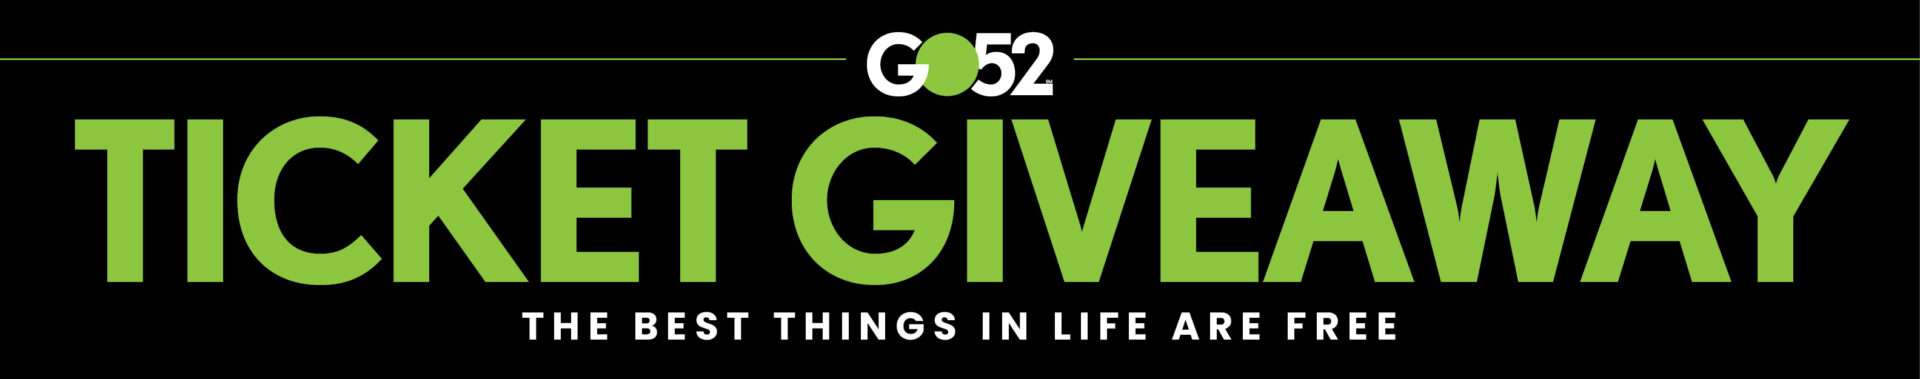 GO52 ticket giveaway contests header